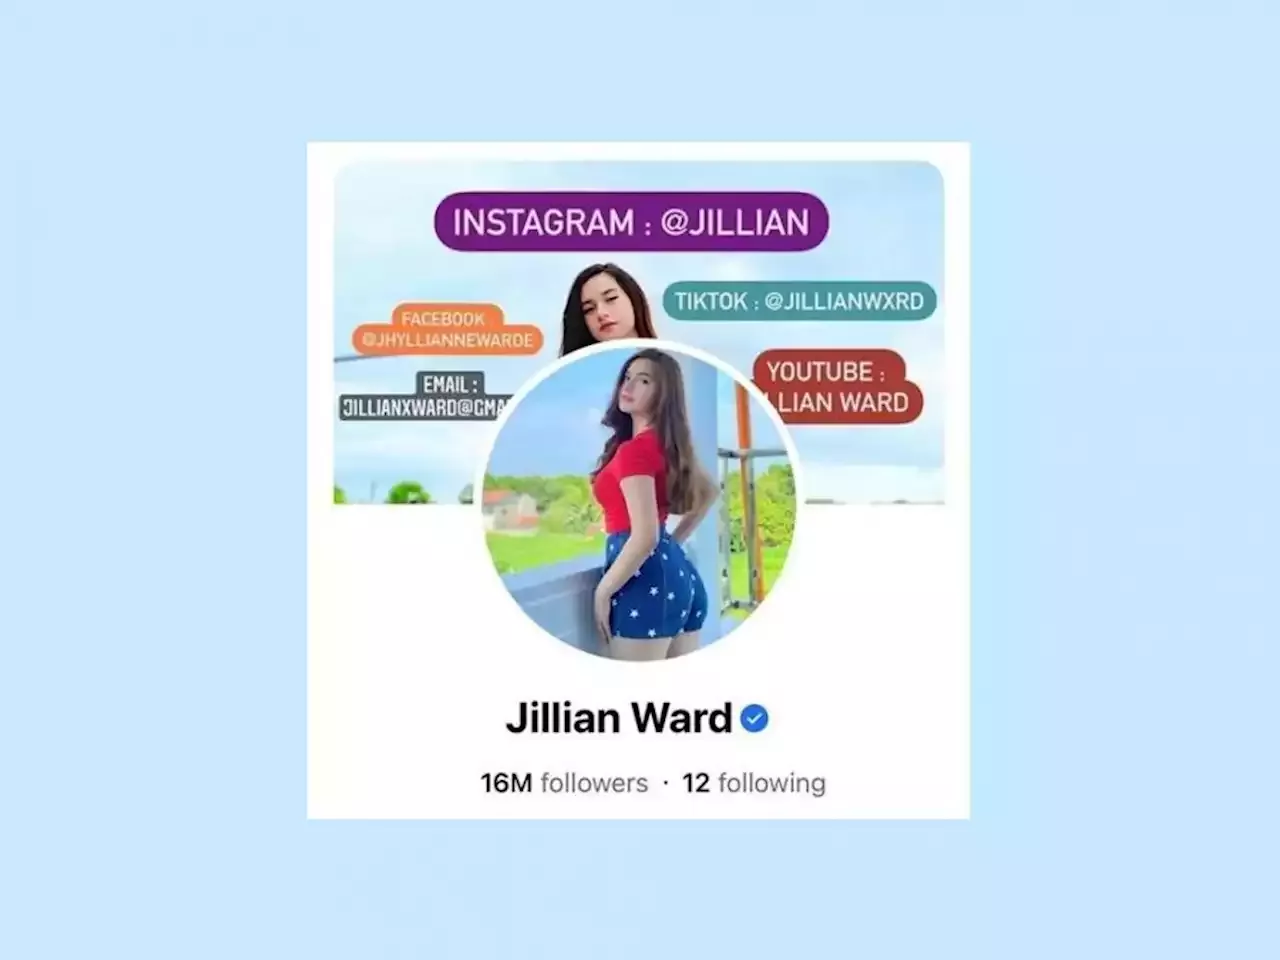 'Prima Donnas' actress Jillian Ward now has 16 million followers on Facebook!